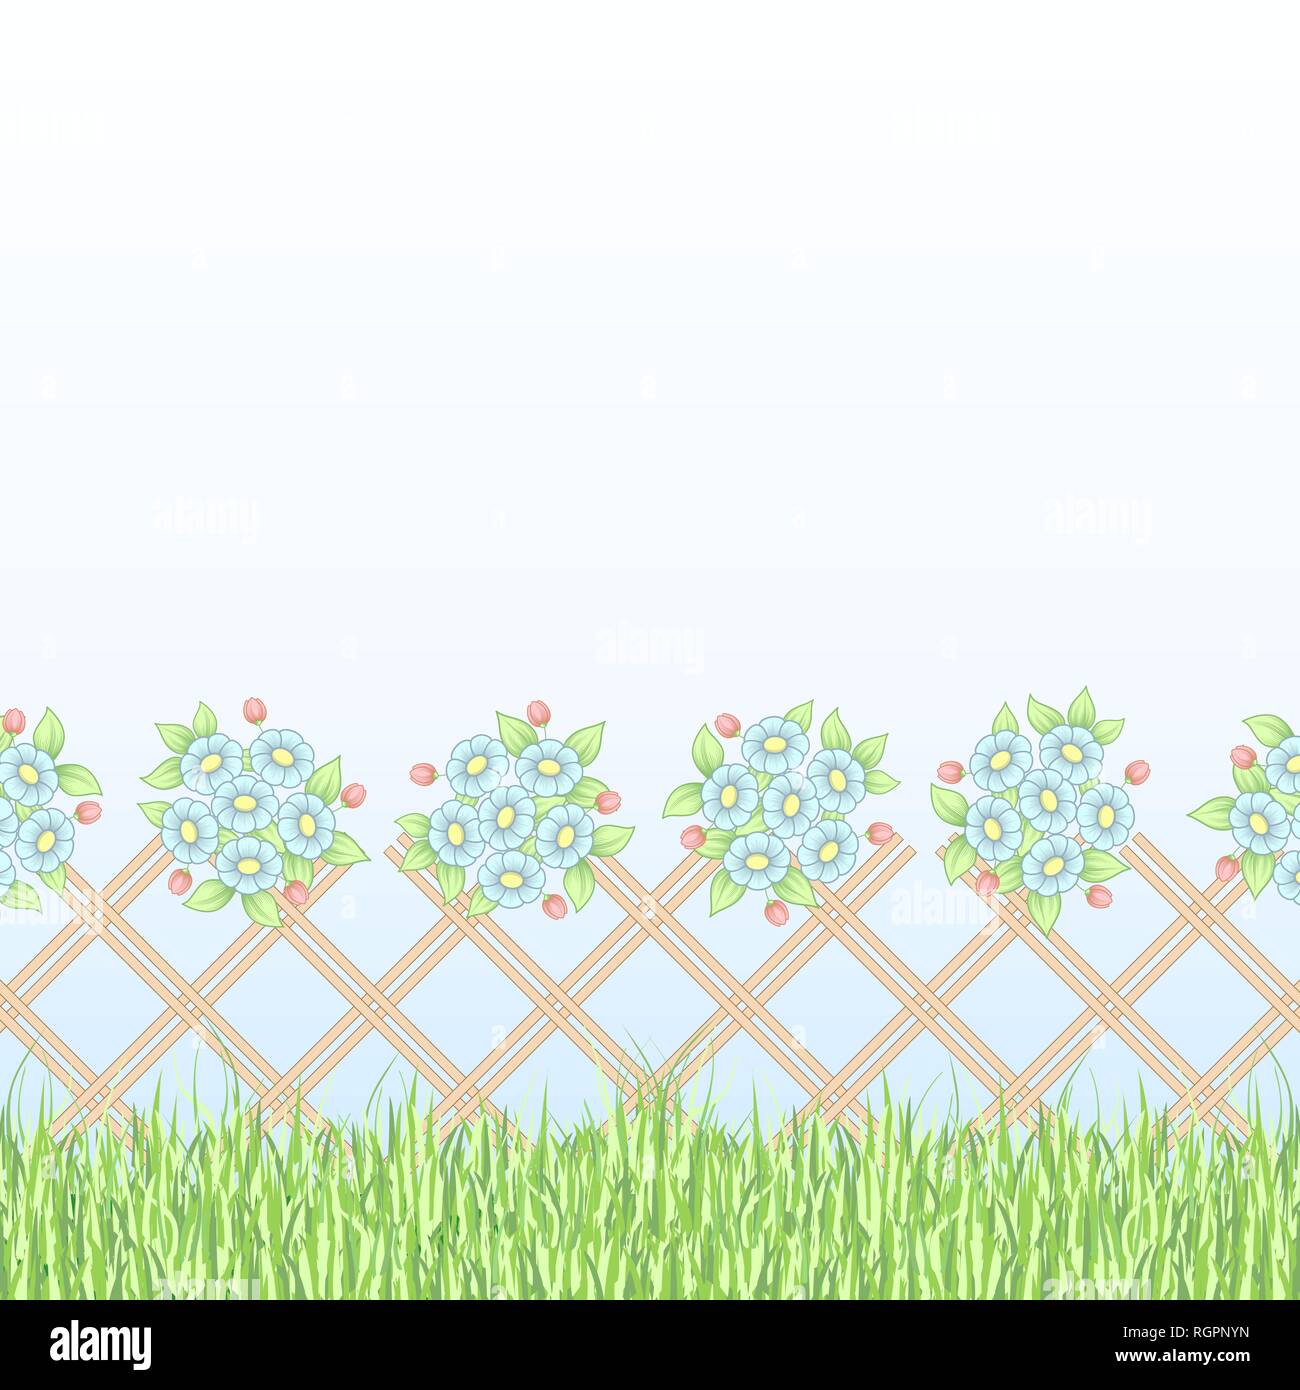 Hintergrund mit Zaun, grünes Gras und Gänseblümchen Blumensträuße Stock Vektor